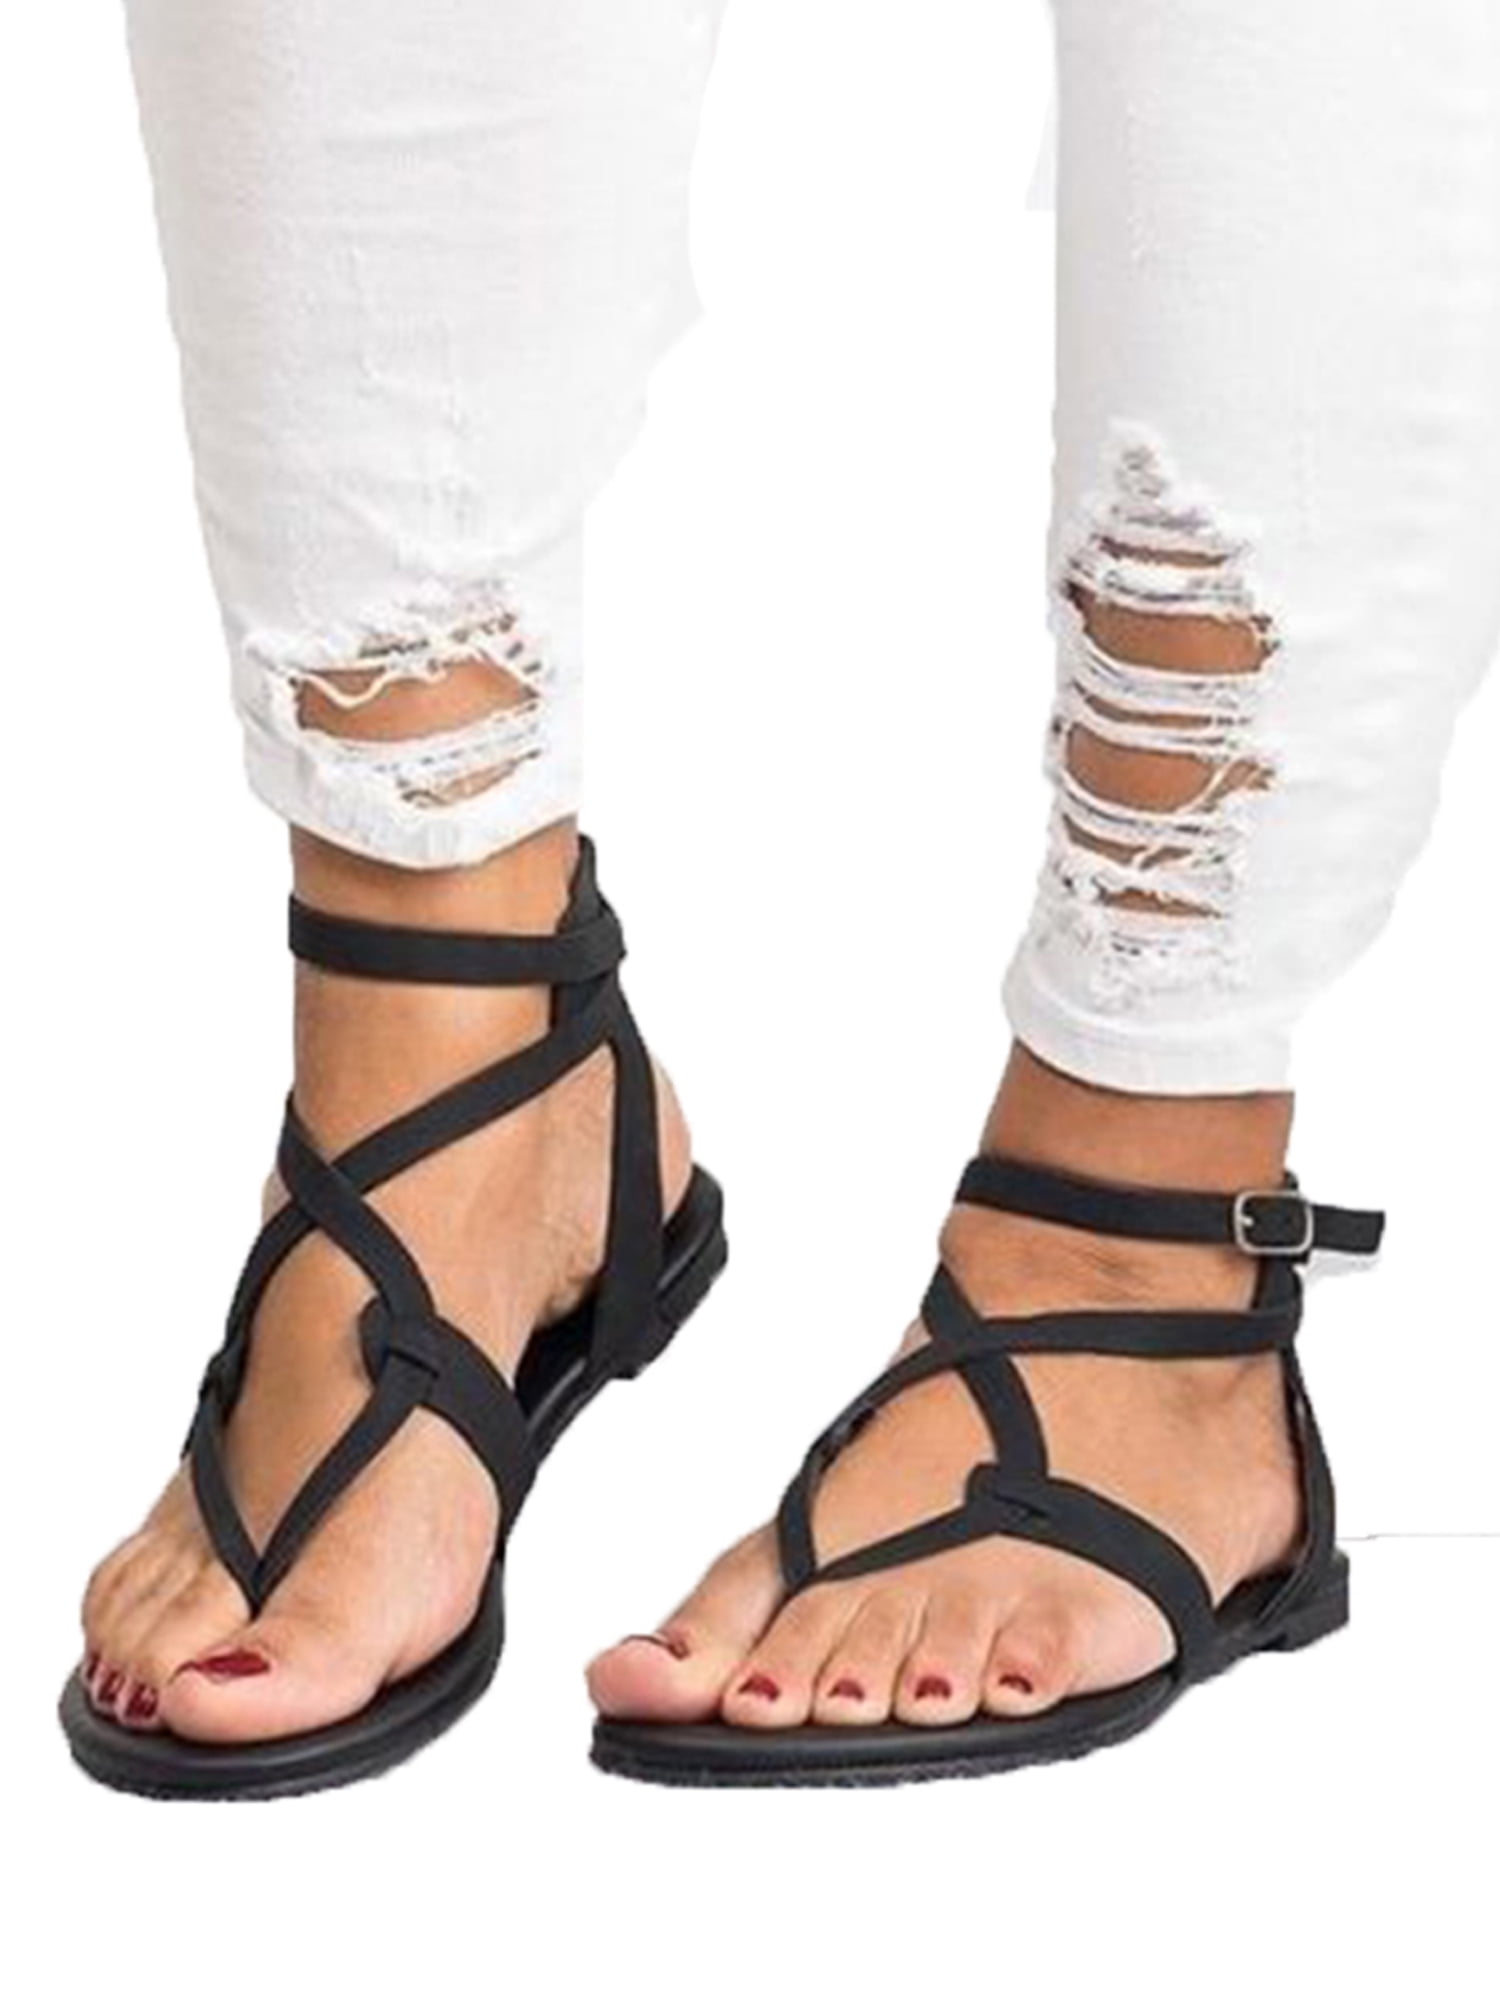 Women Flip Flops Sandals Casual Summer Cross Strap Open Toe Flat Beach Shoes HOT 